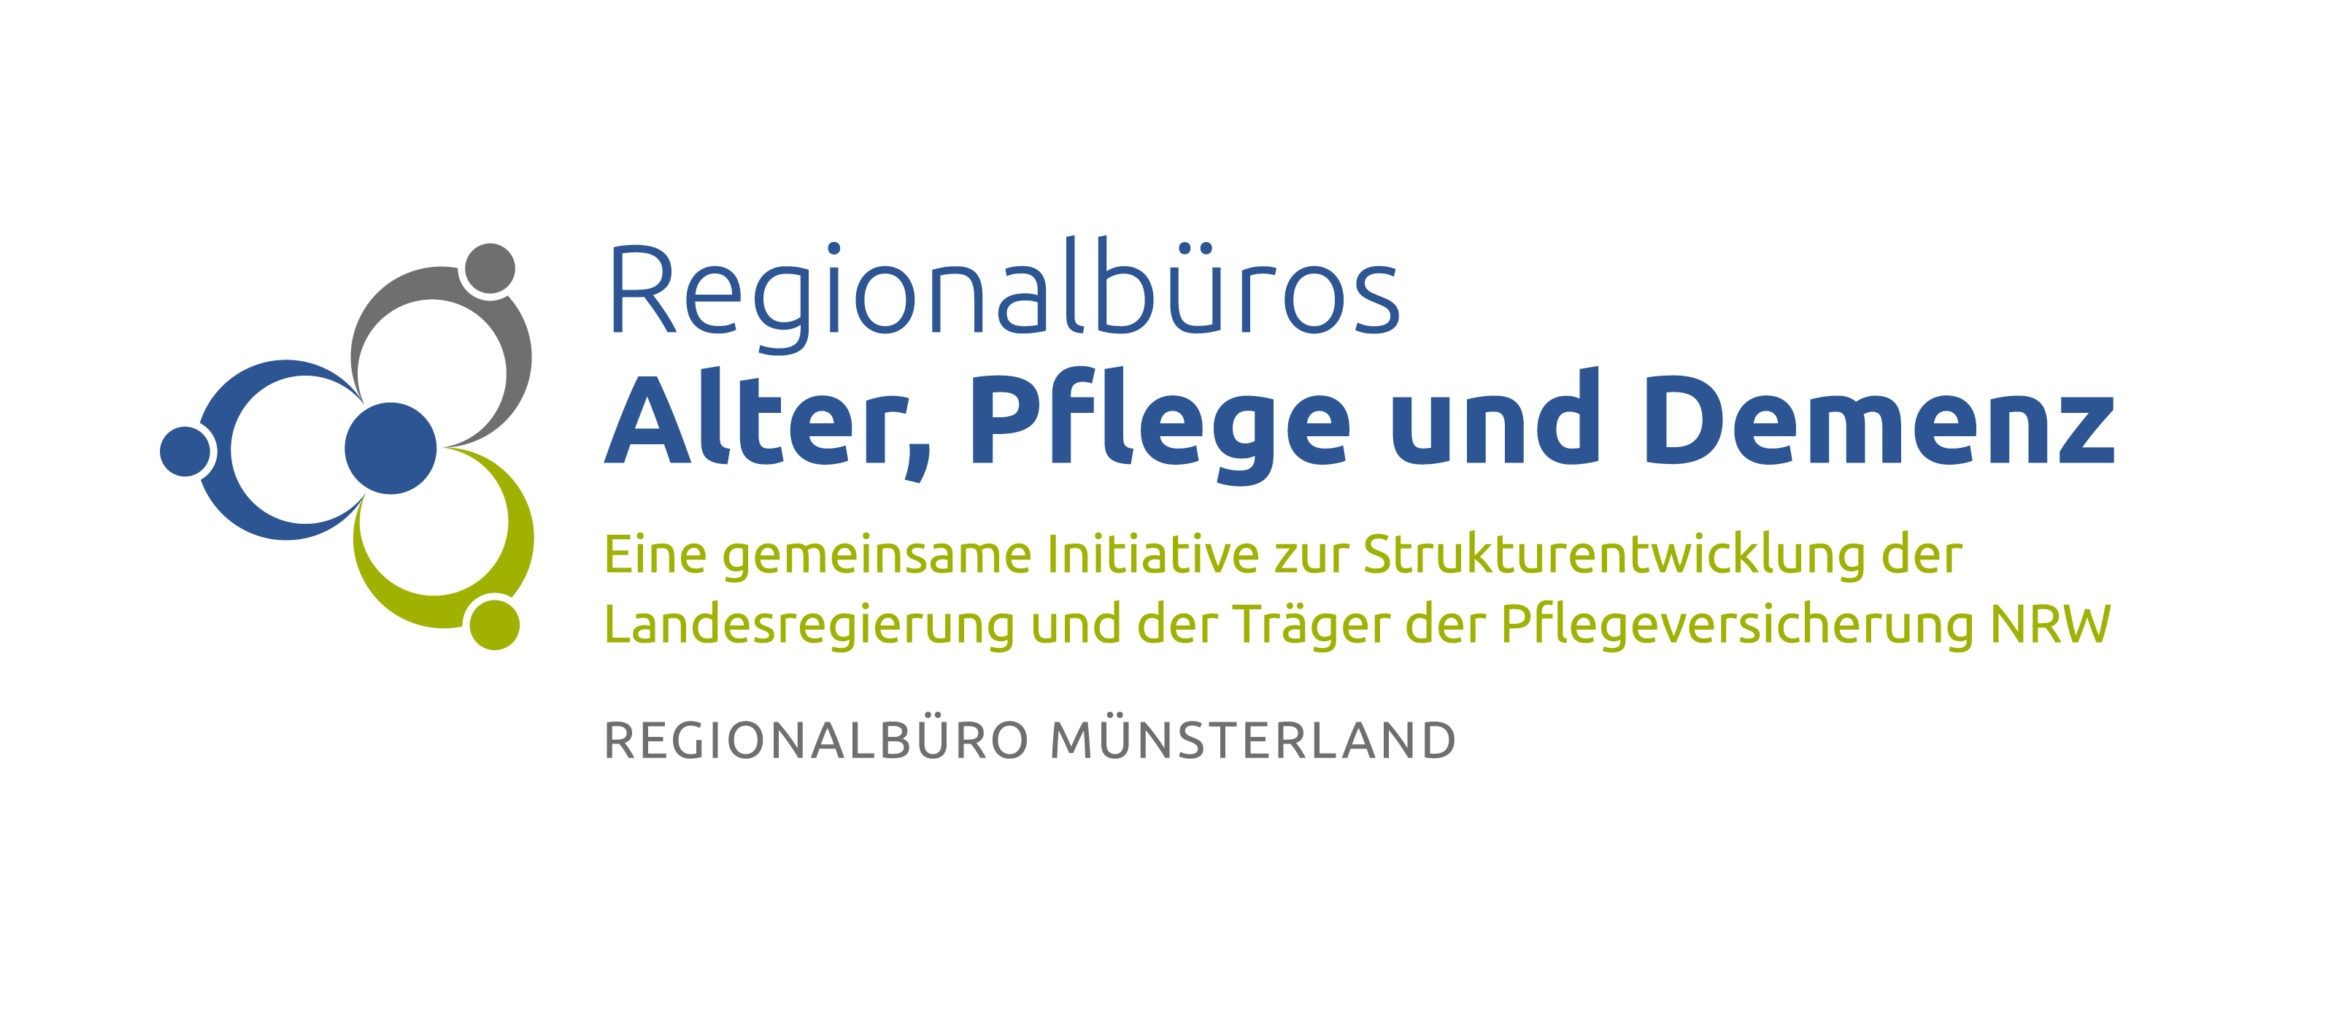 Region Münsterland – Regionalbüros Alter, Pflege und Demenz